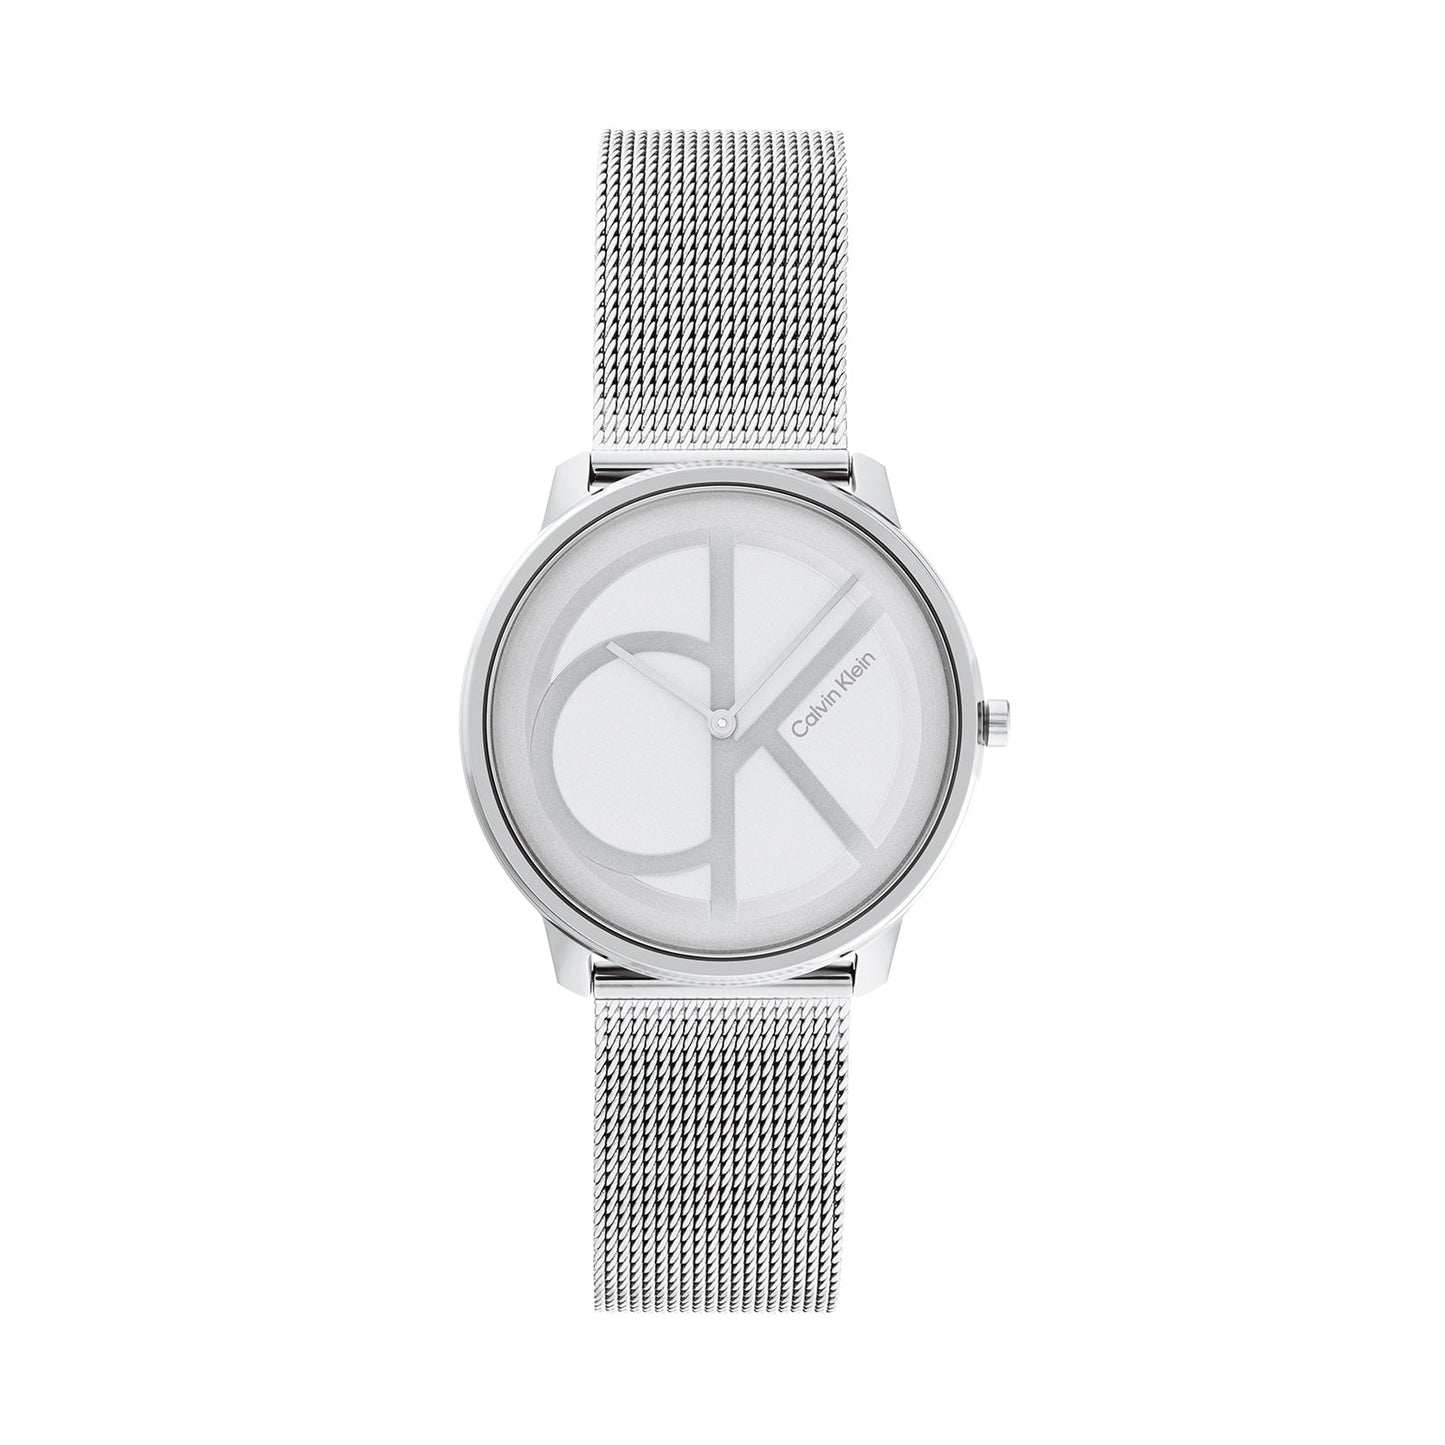 Calvin Klein 25200027 Unisex Steel Mesh Watch